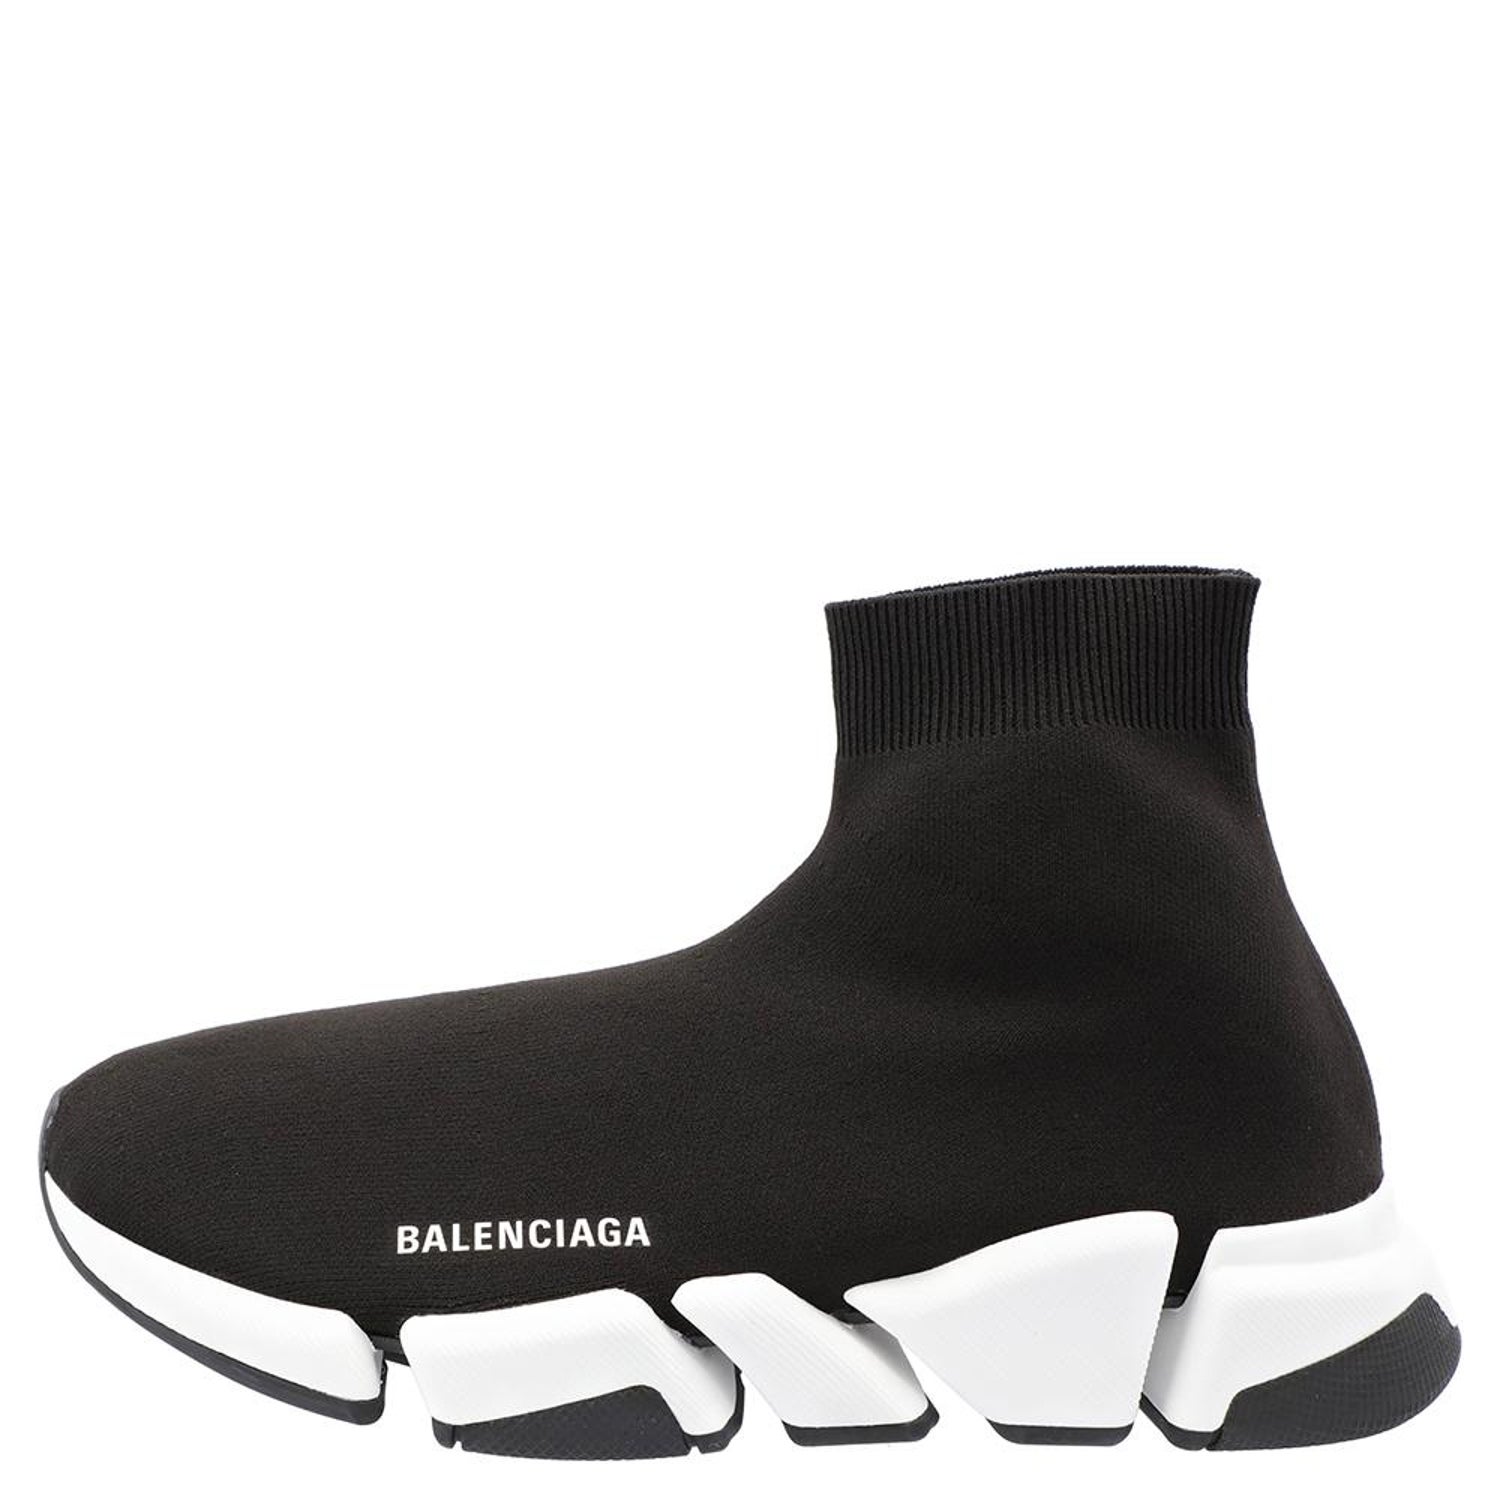 Balenciaga Speed 2.0 Black/White Trainers Size EU 41 For Sale at 1stDibs |  black white size eu 41, balenciaga 2.0 black